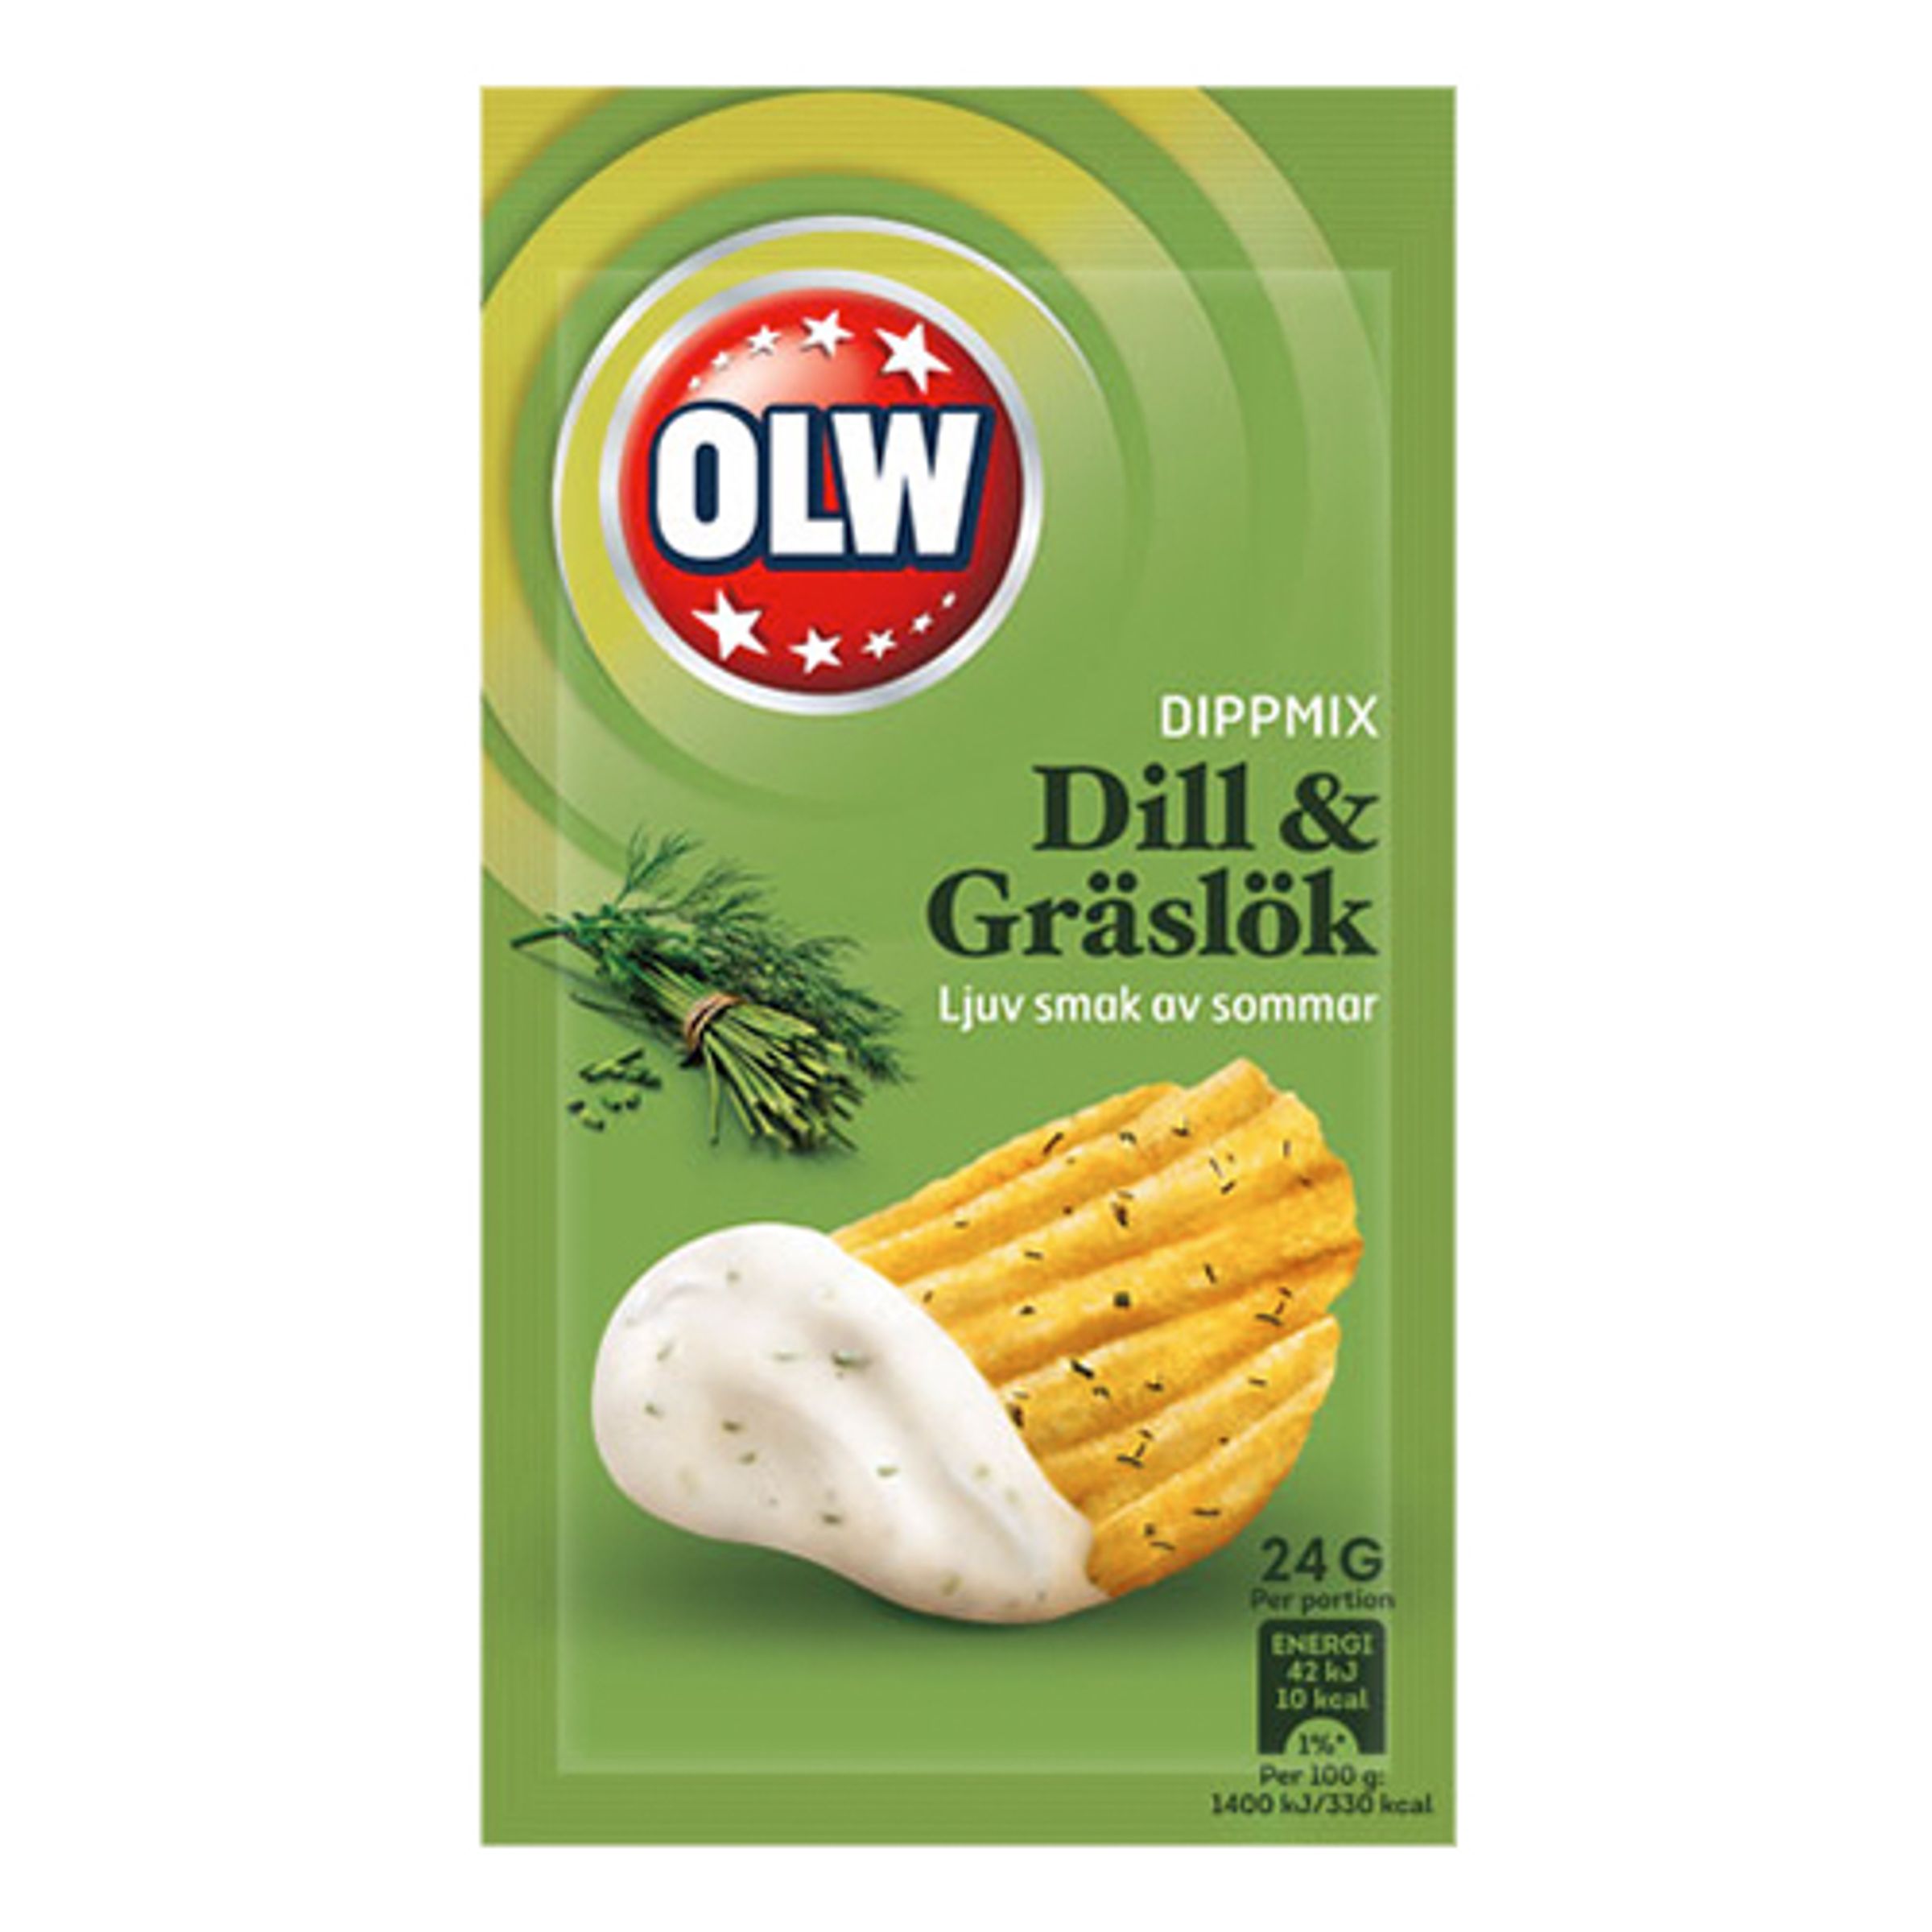 OLW Dippmix Dill & Gräslök